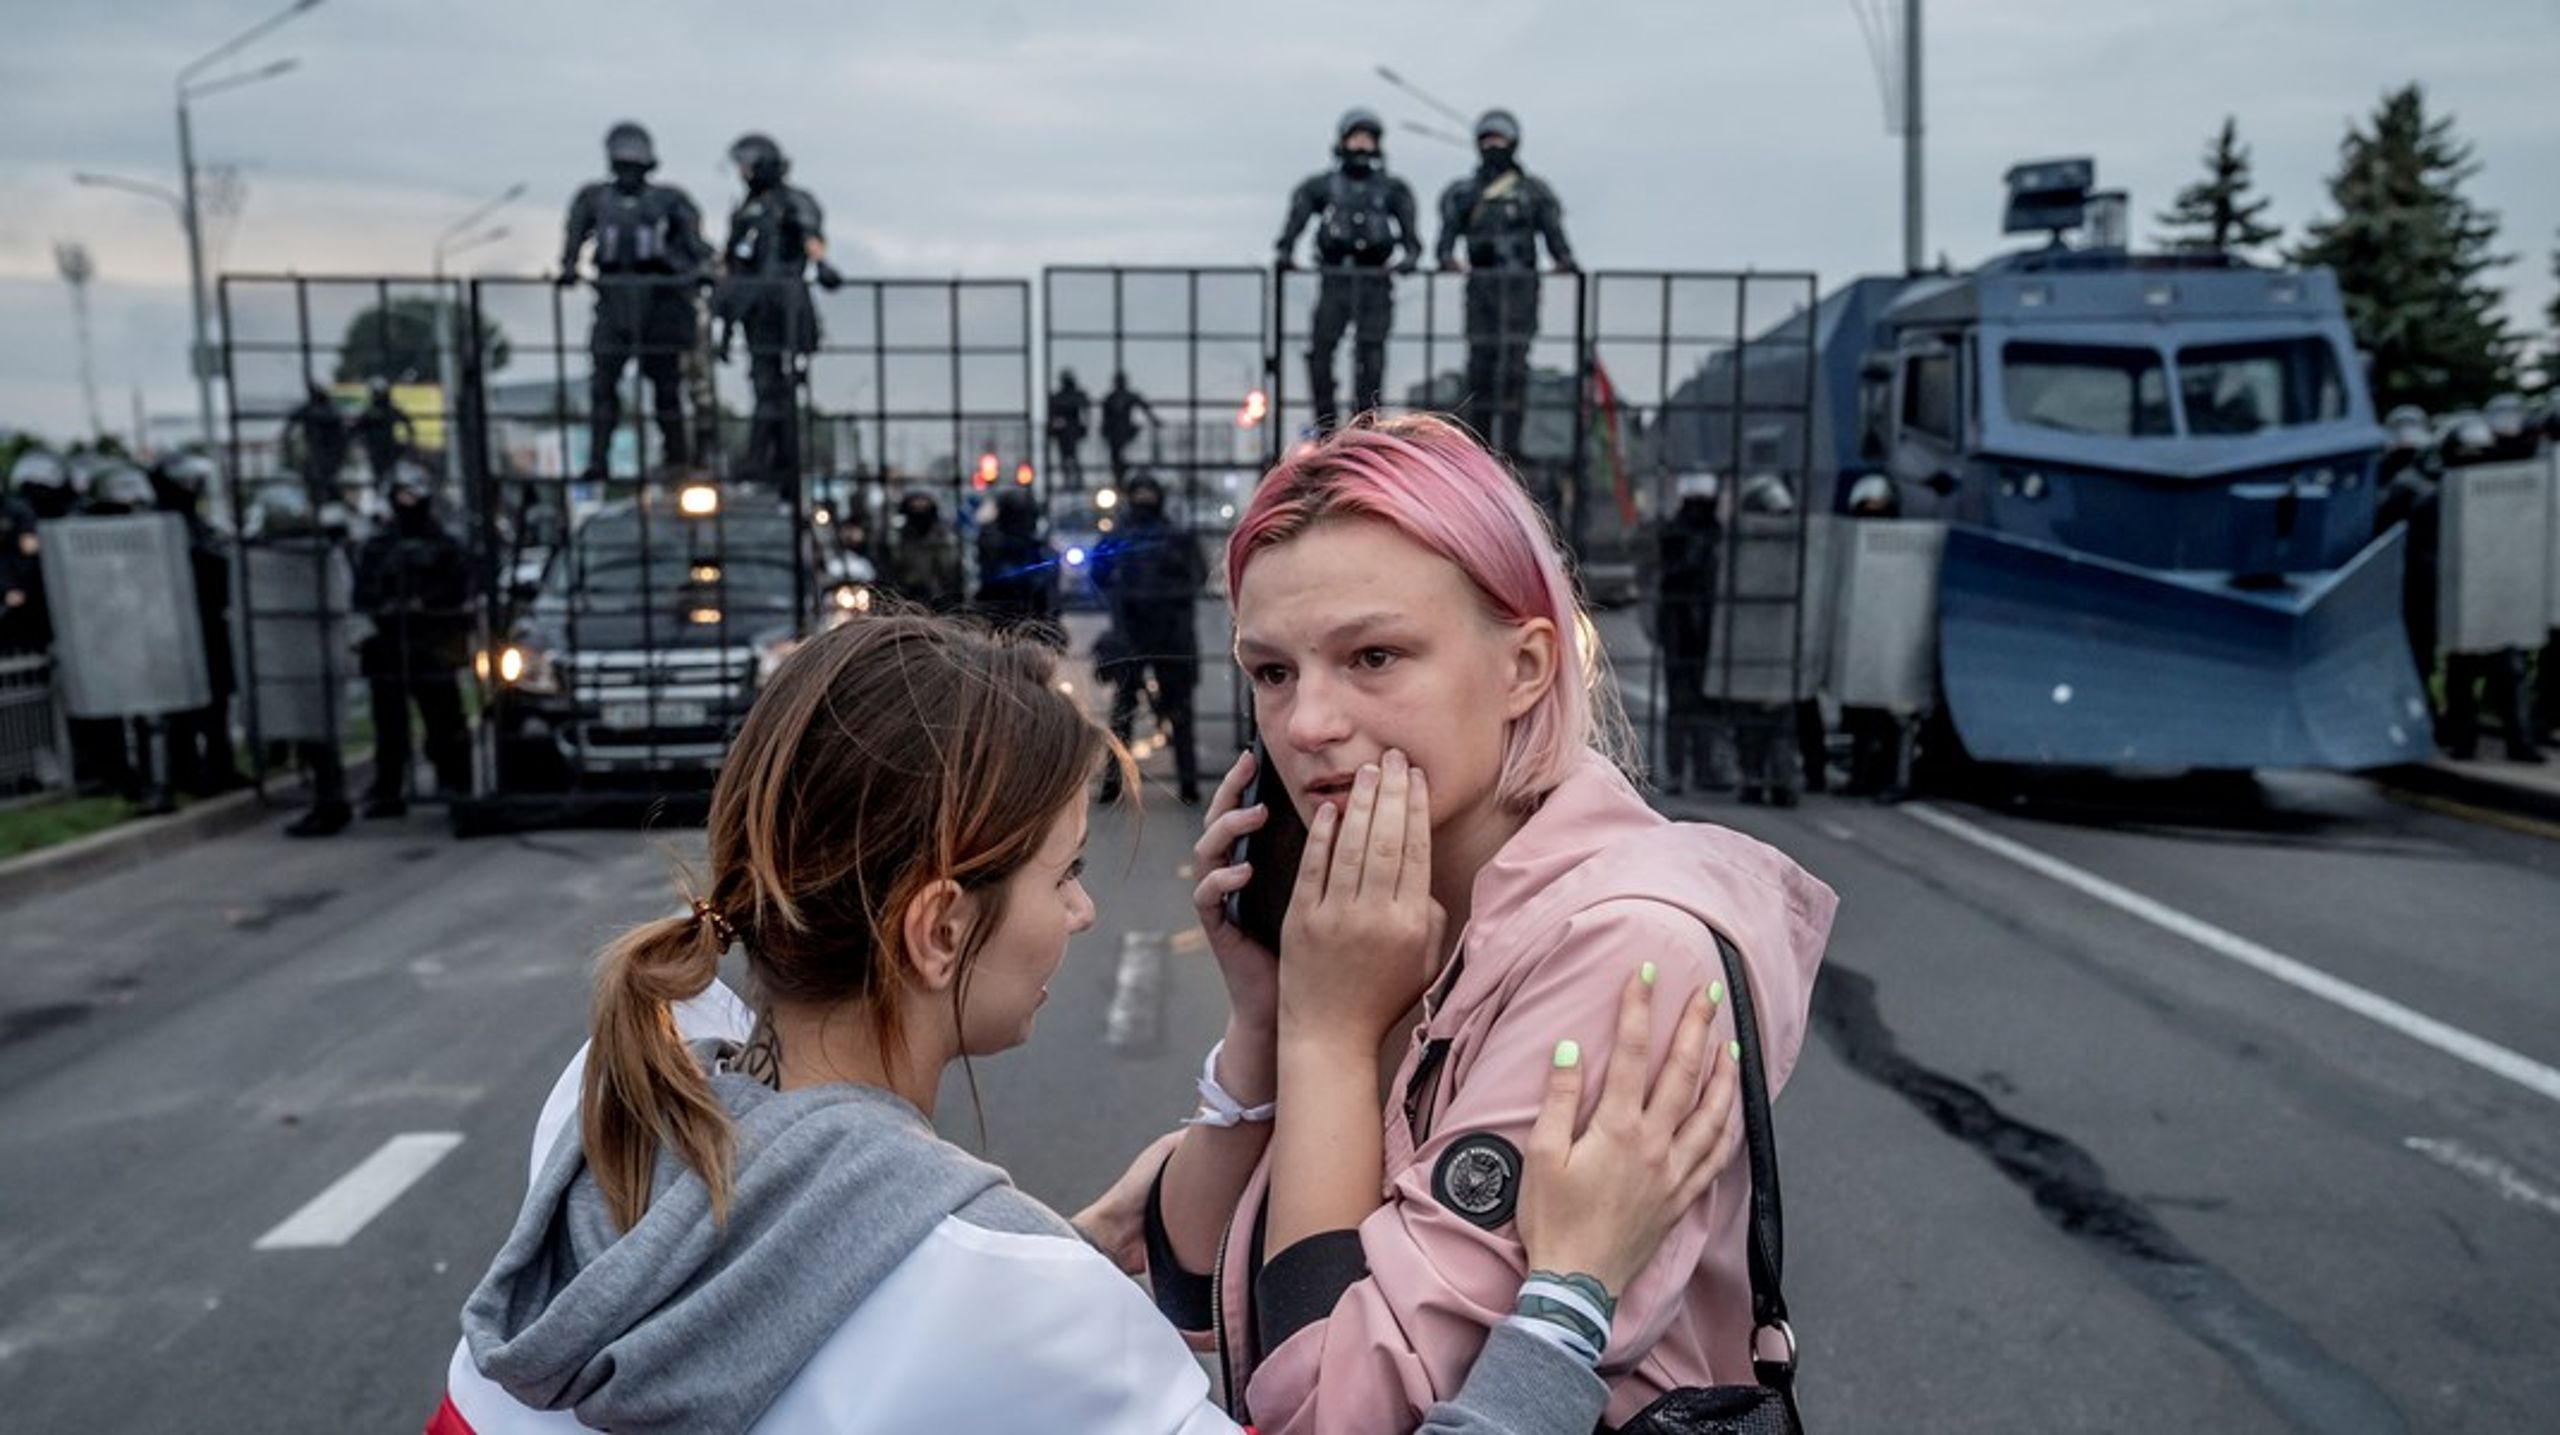 "Lige nu er frontlinjen i Hviderusland, men hvis vi lader den passere, så vil autoritære kræfter få endnu større styrke," skriver David Trads.